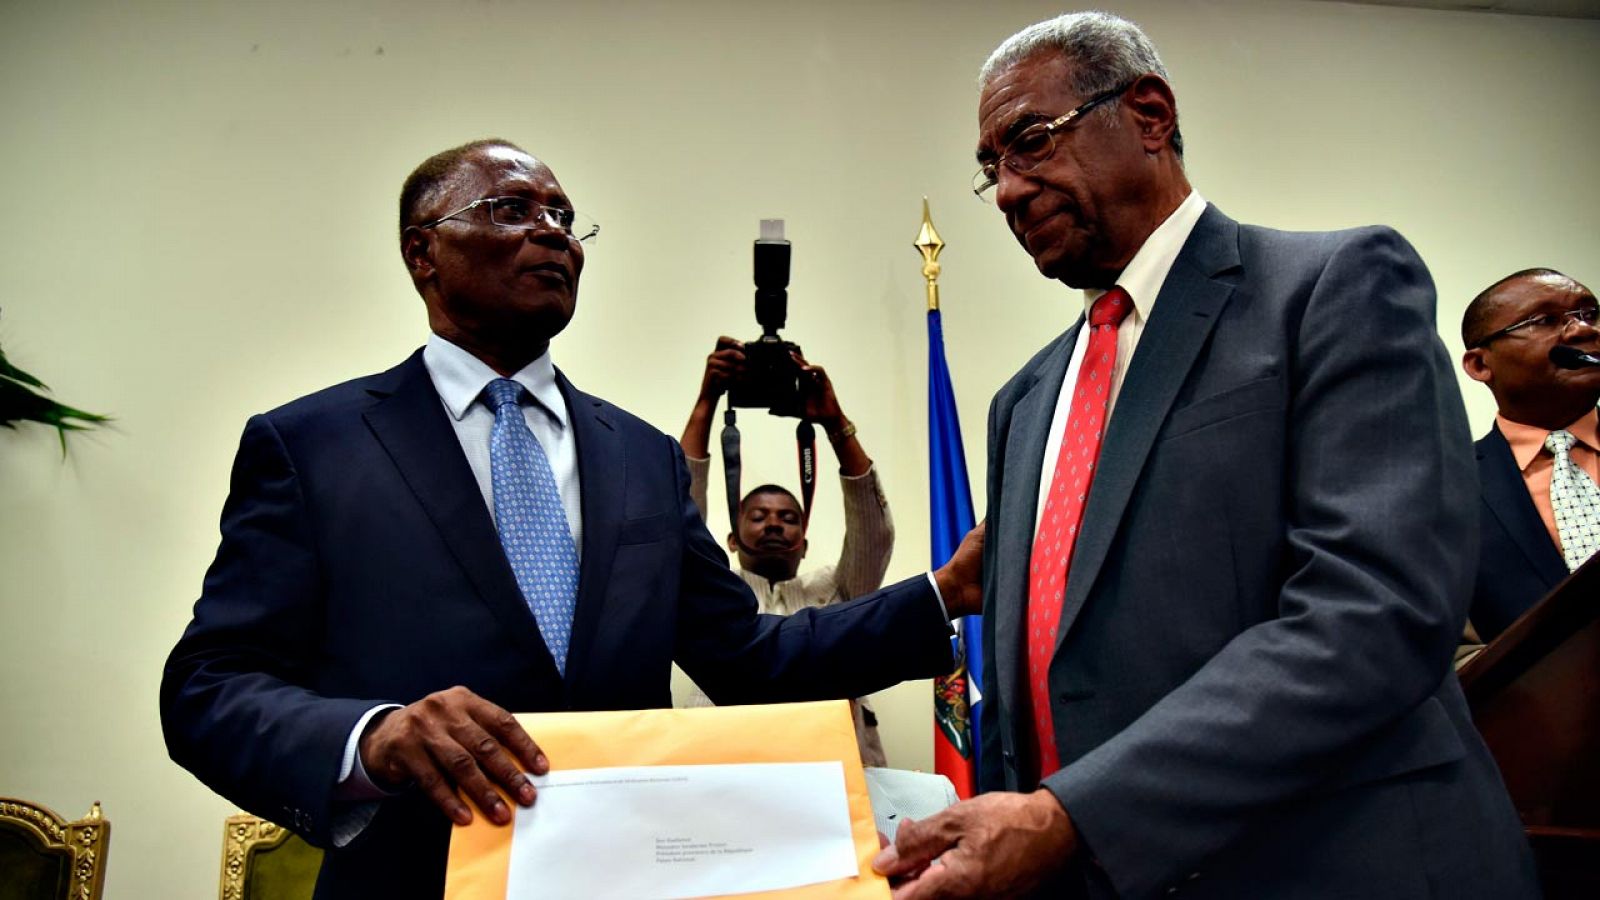 El presidente interino de Haití, Jocelerme Privert (a la izquierda), recibe el informe sobre los resultados de la primera vuelta de las presidenciales de manos del responsable de la Comisión de Verificación, François Benoît